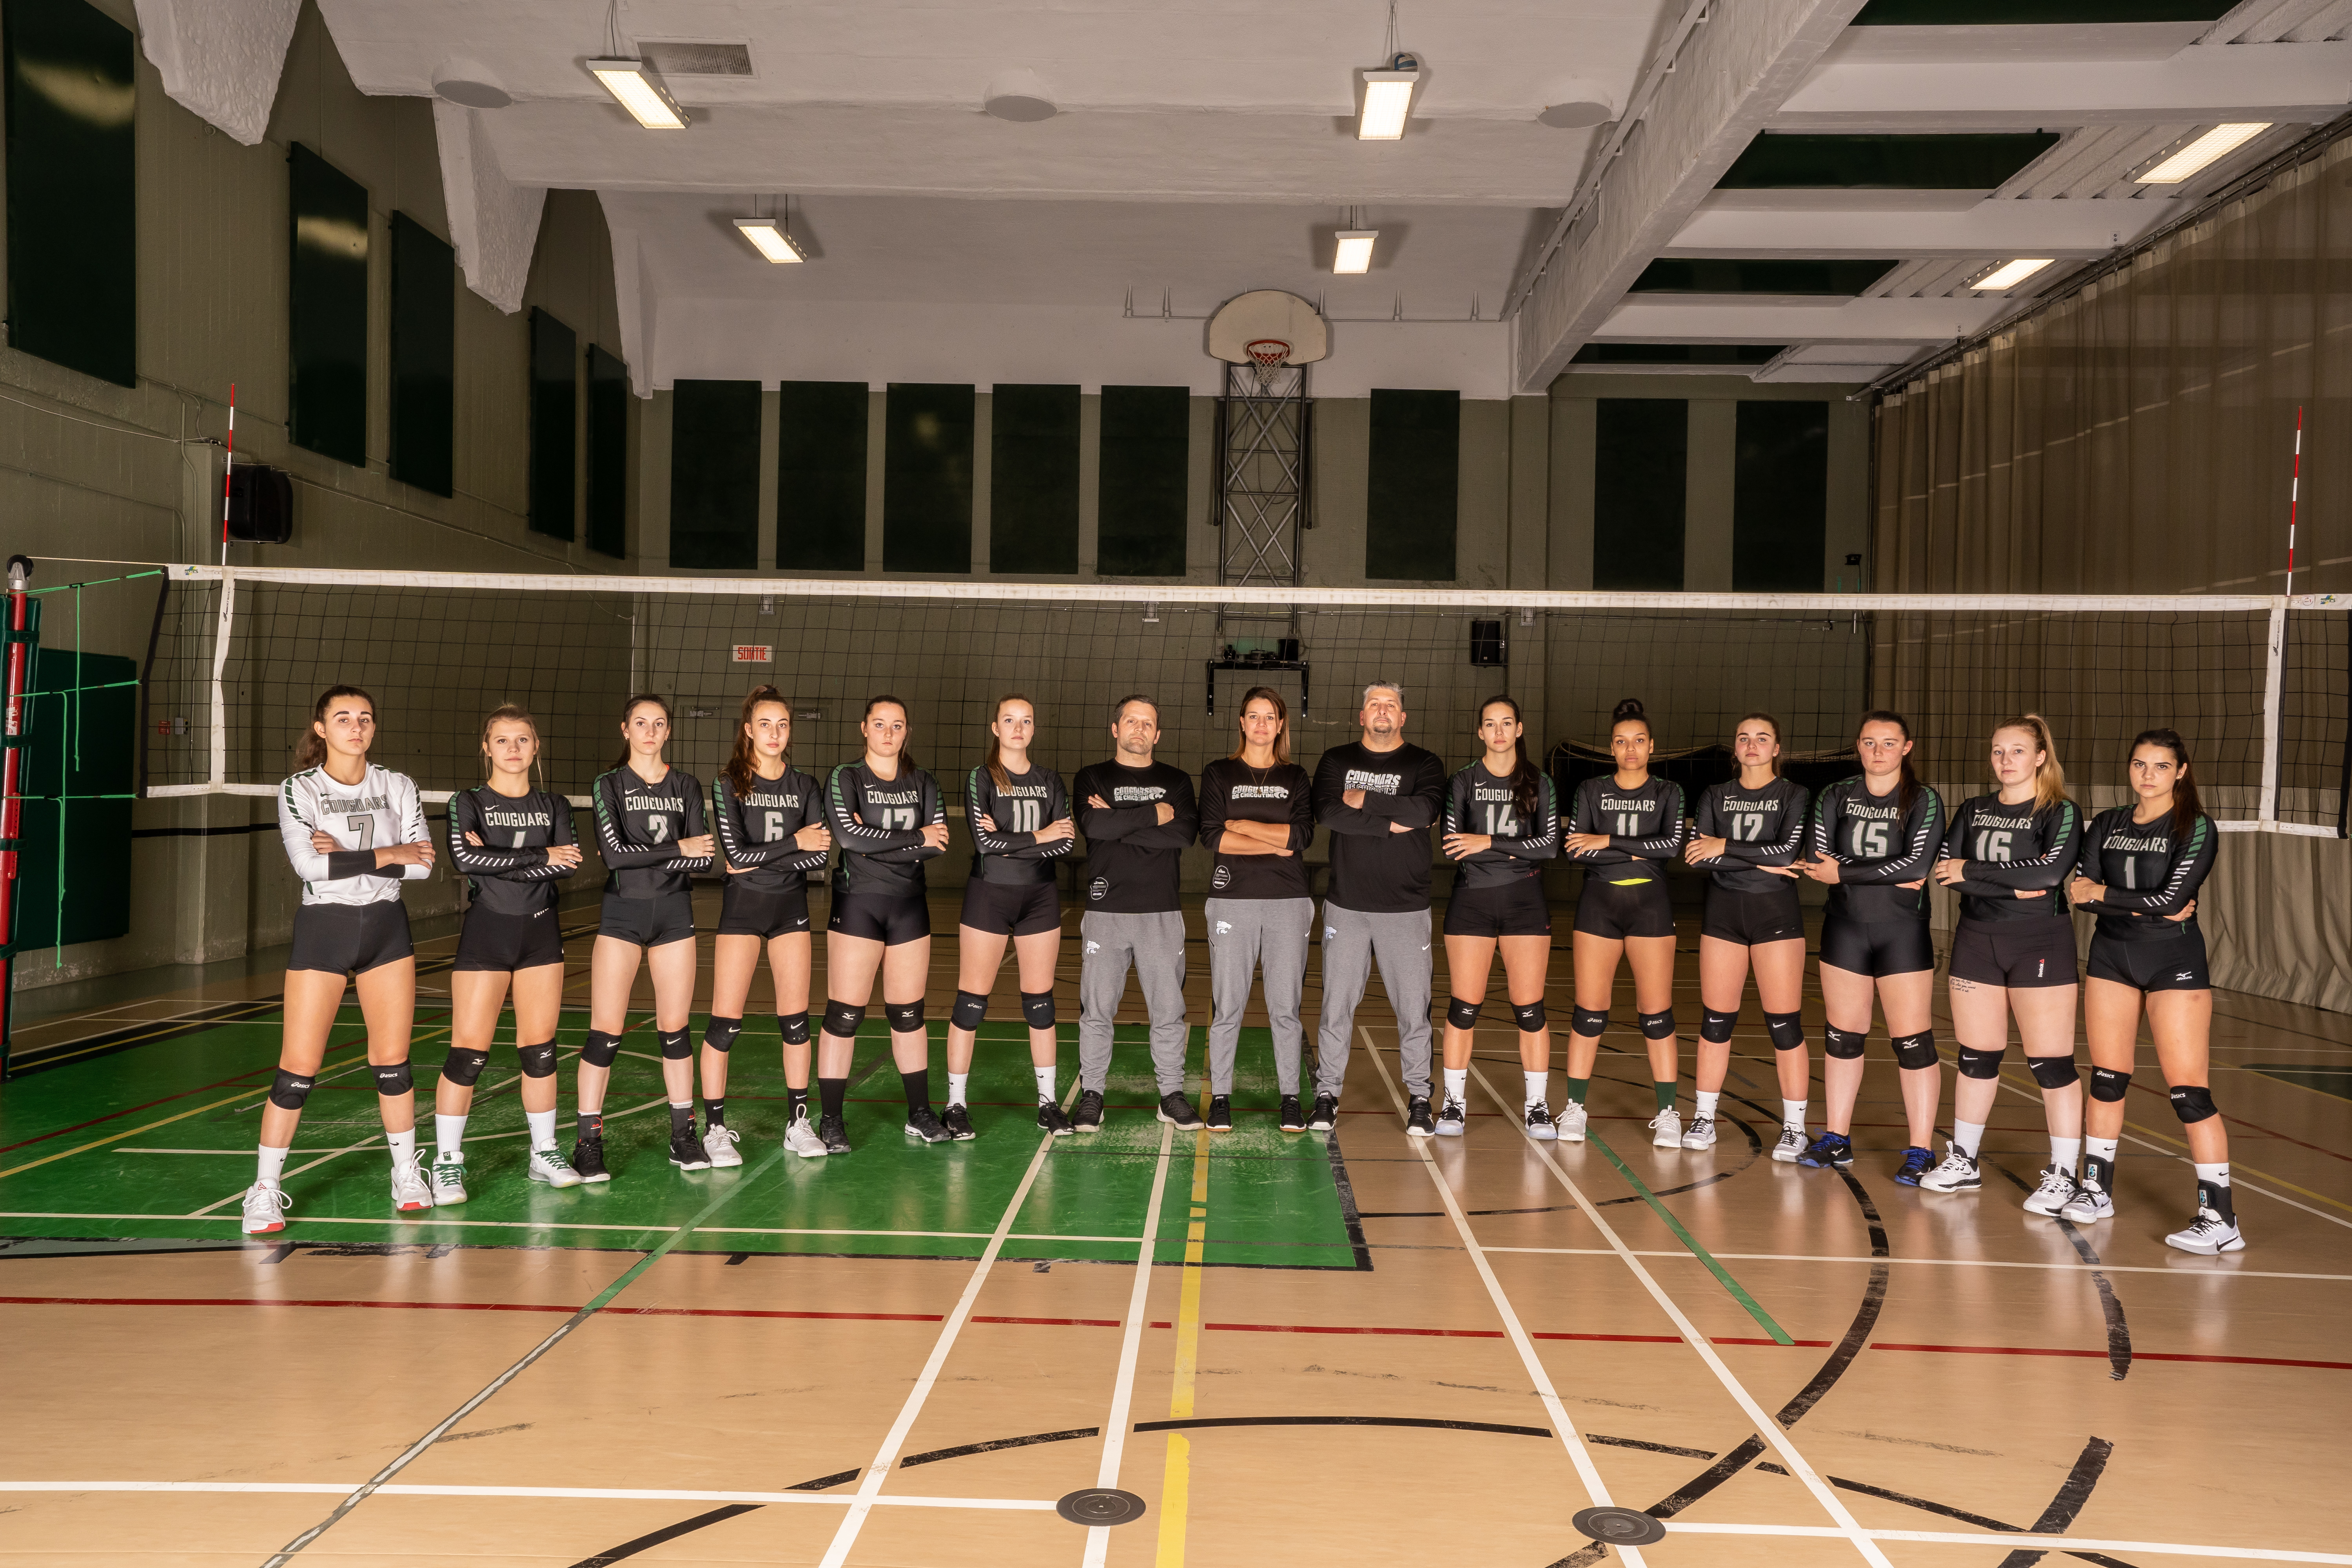  Équipe championne de la saison - Volleyball féminin division 2 - Saguenay-Lac-Saint-Jean - Côte-Nord - Couguars